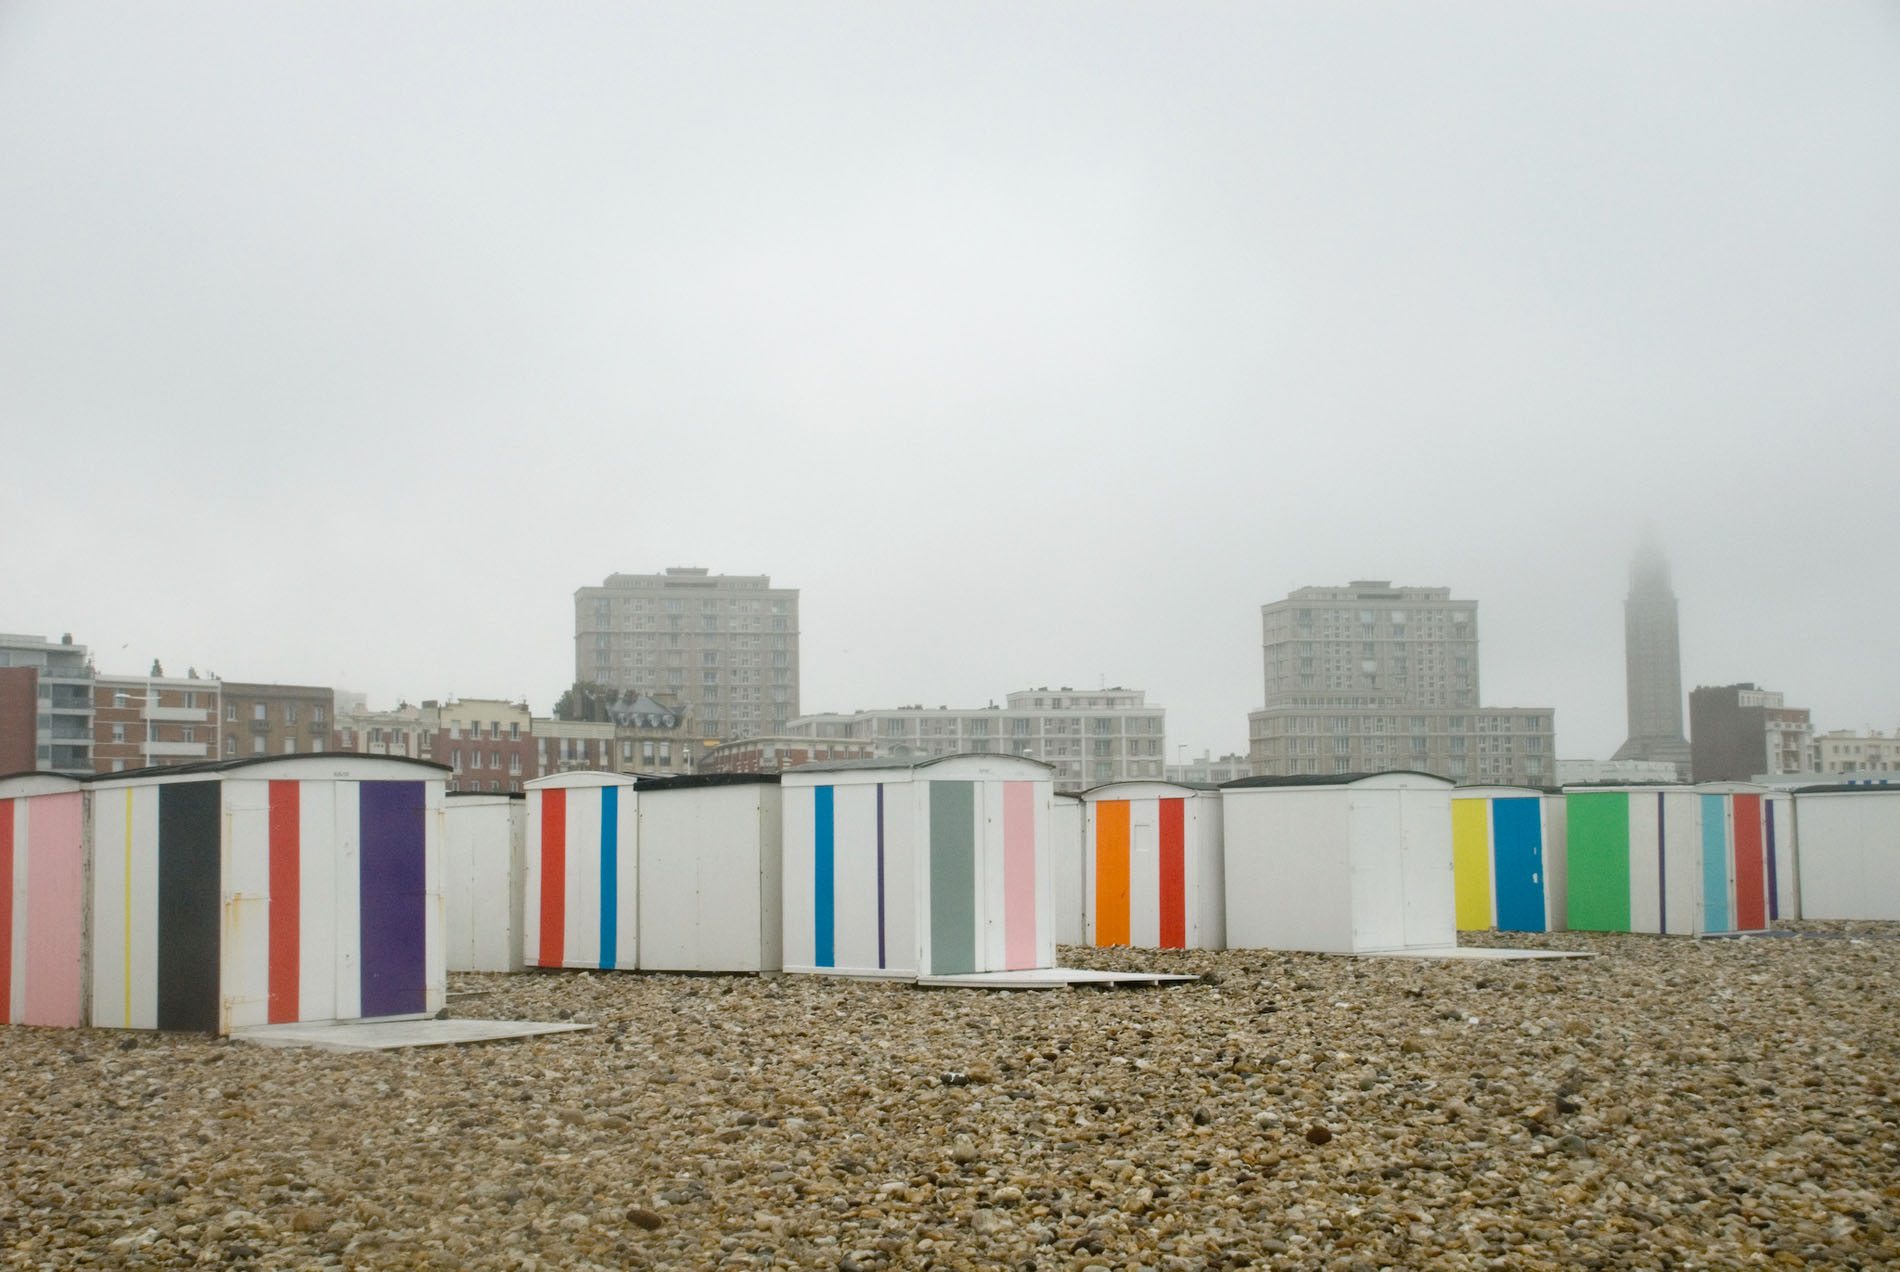 Parcours La Ville Perret. ... und Karel Martens "Colors on the Beach".